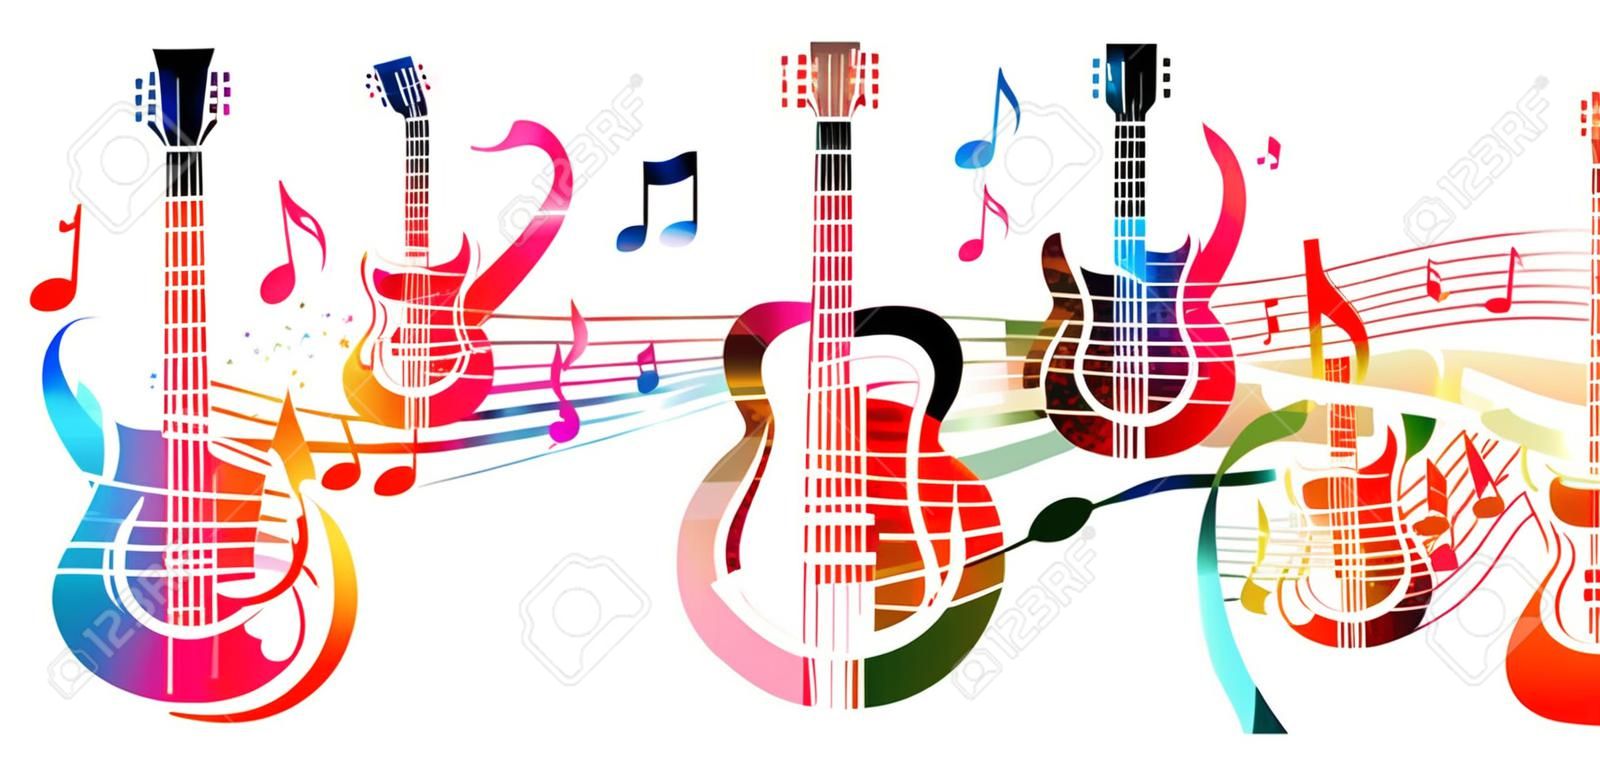 创意音乐风格模板矢量插画彩色吉他与音乐五线谱和音符乐器背景设计海报海报横幅音乐会和音乐商店